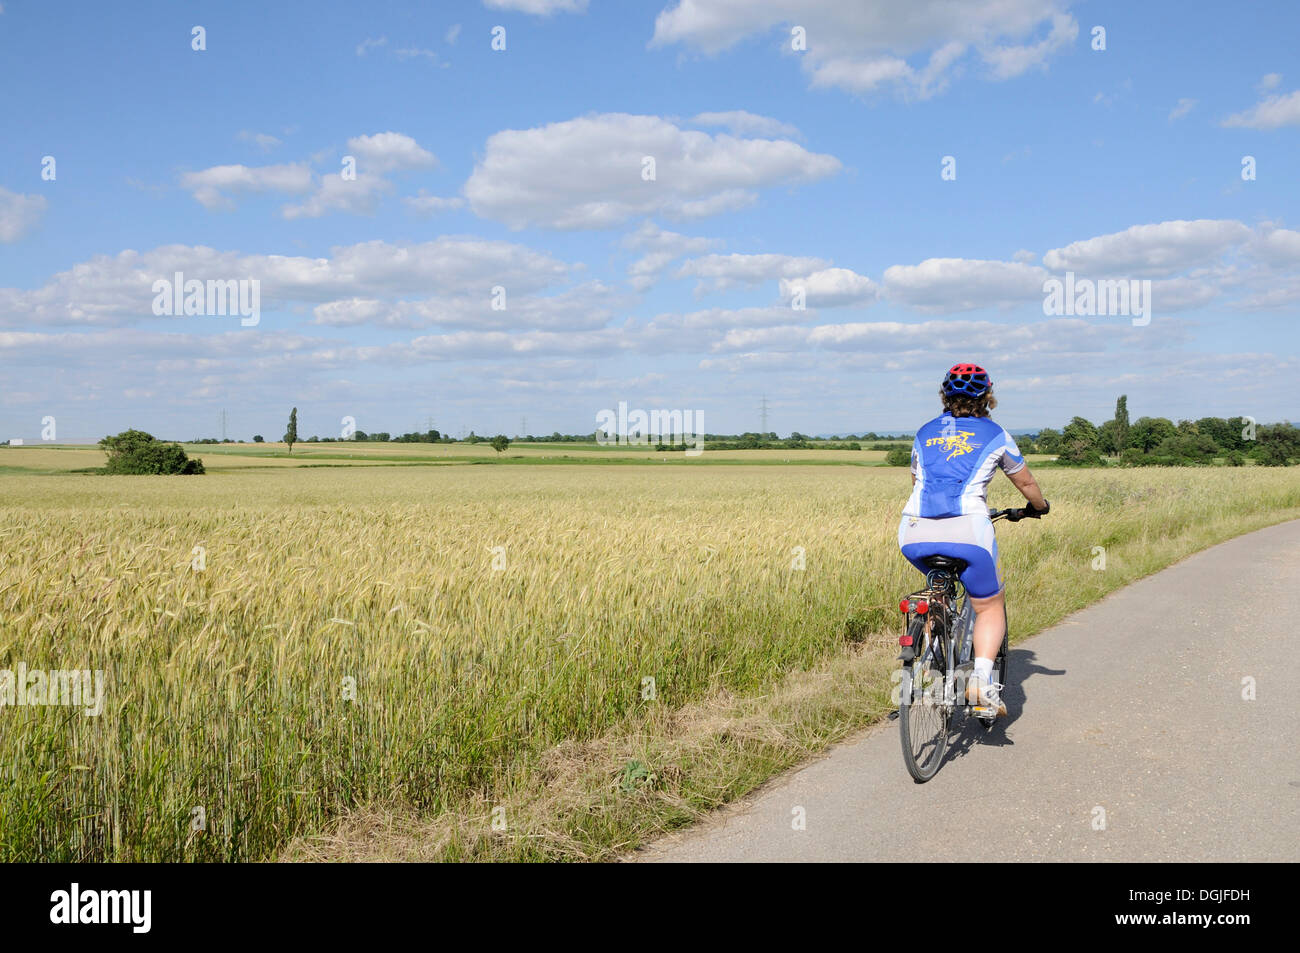 Cycliste sur une route secondaire à travers grainfield, triestingtal valley, Basse Autriche, Europe Banque D'Images